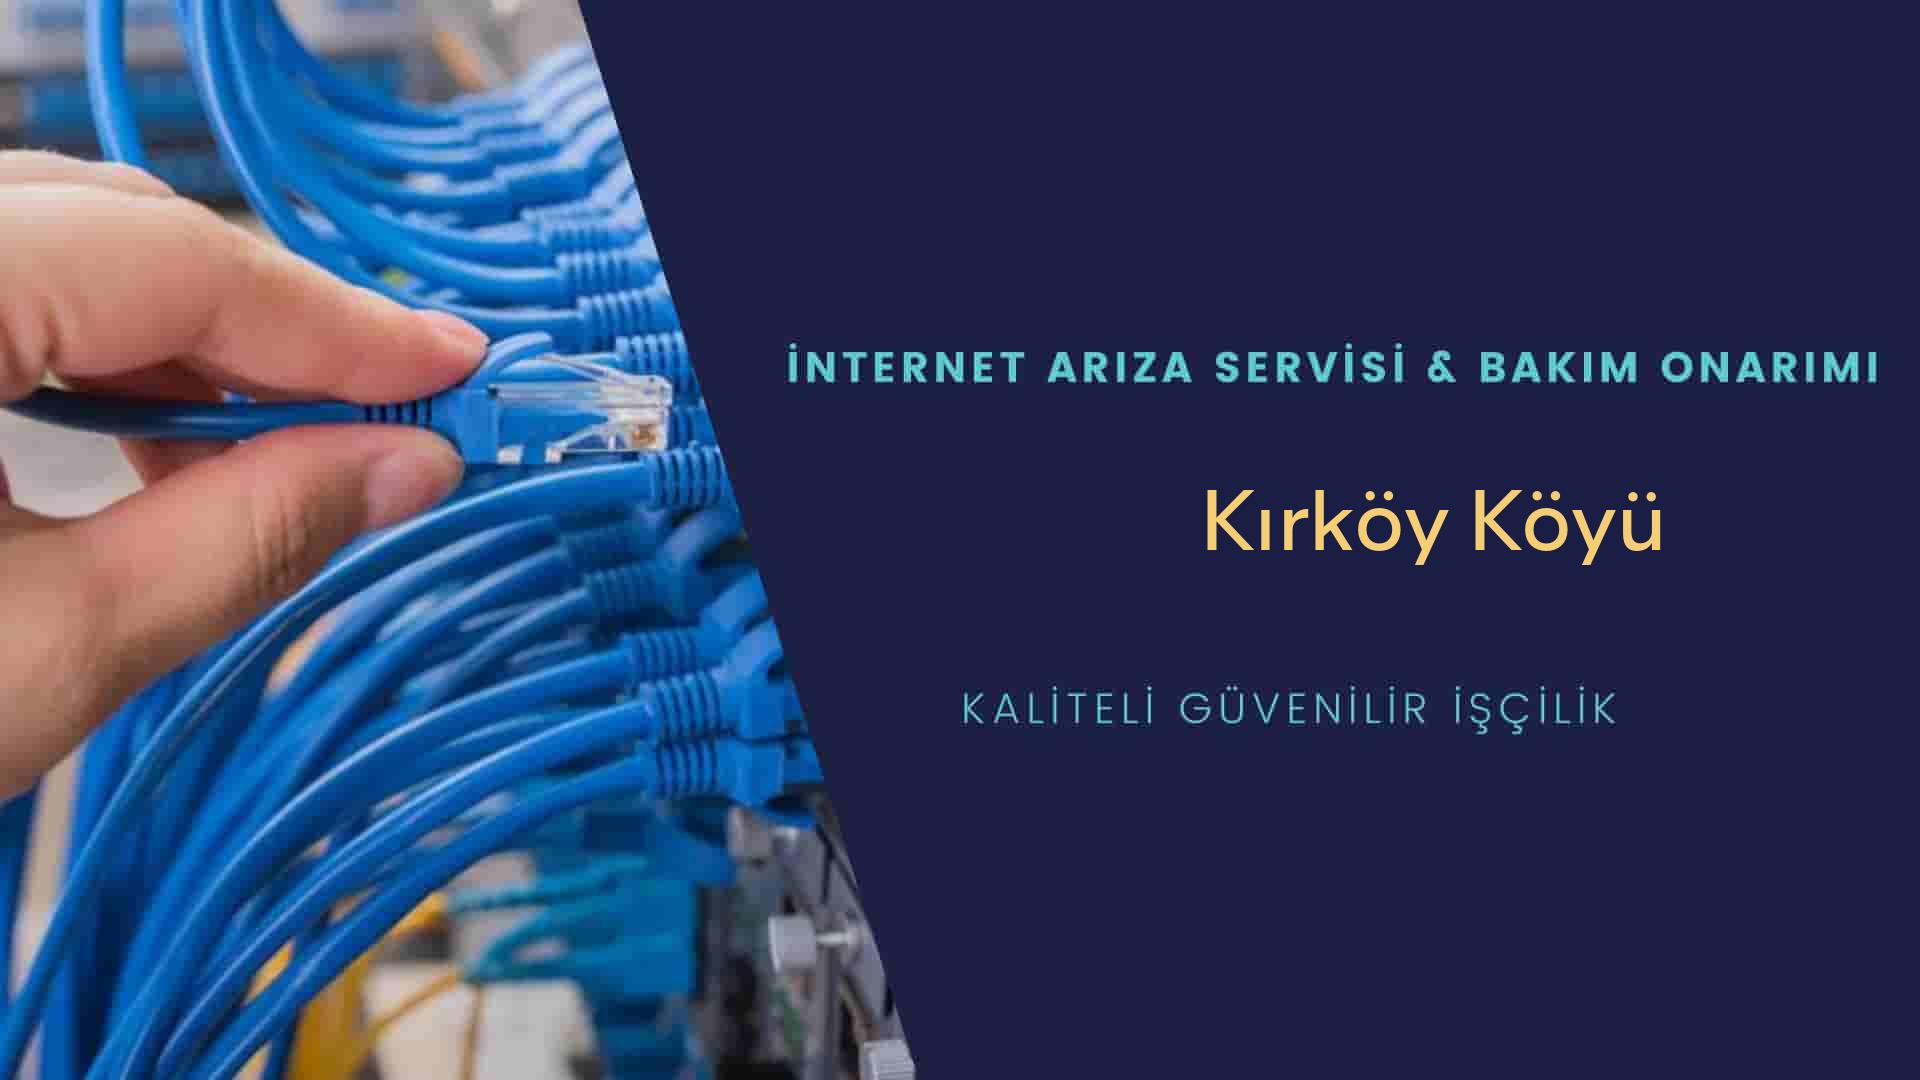 Kırköy Köyü internet kablosu çekimi yapan yerler veya elektrikçiler mi? arıyorsunuz doğru yerdesiniz o zaman sizlere 7/24 yardımcı olacak profesyonel ustalarımız bir telefon kadar yakındır size.